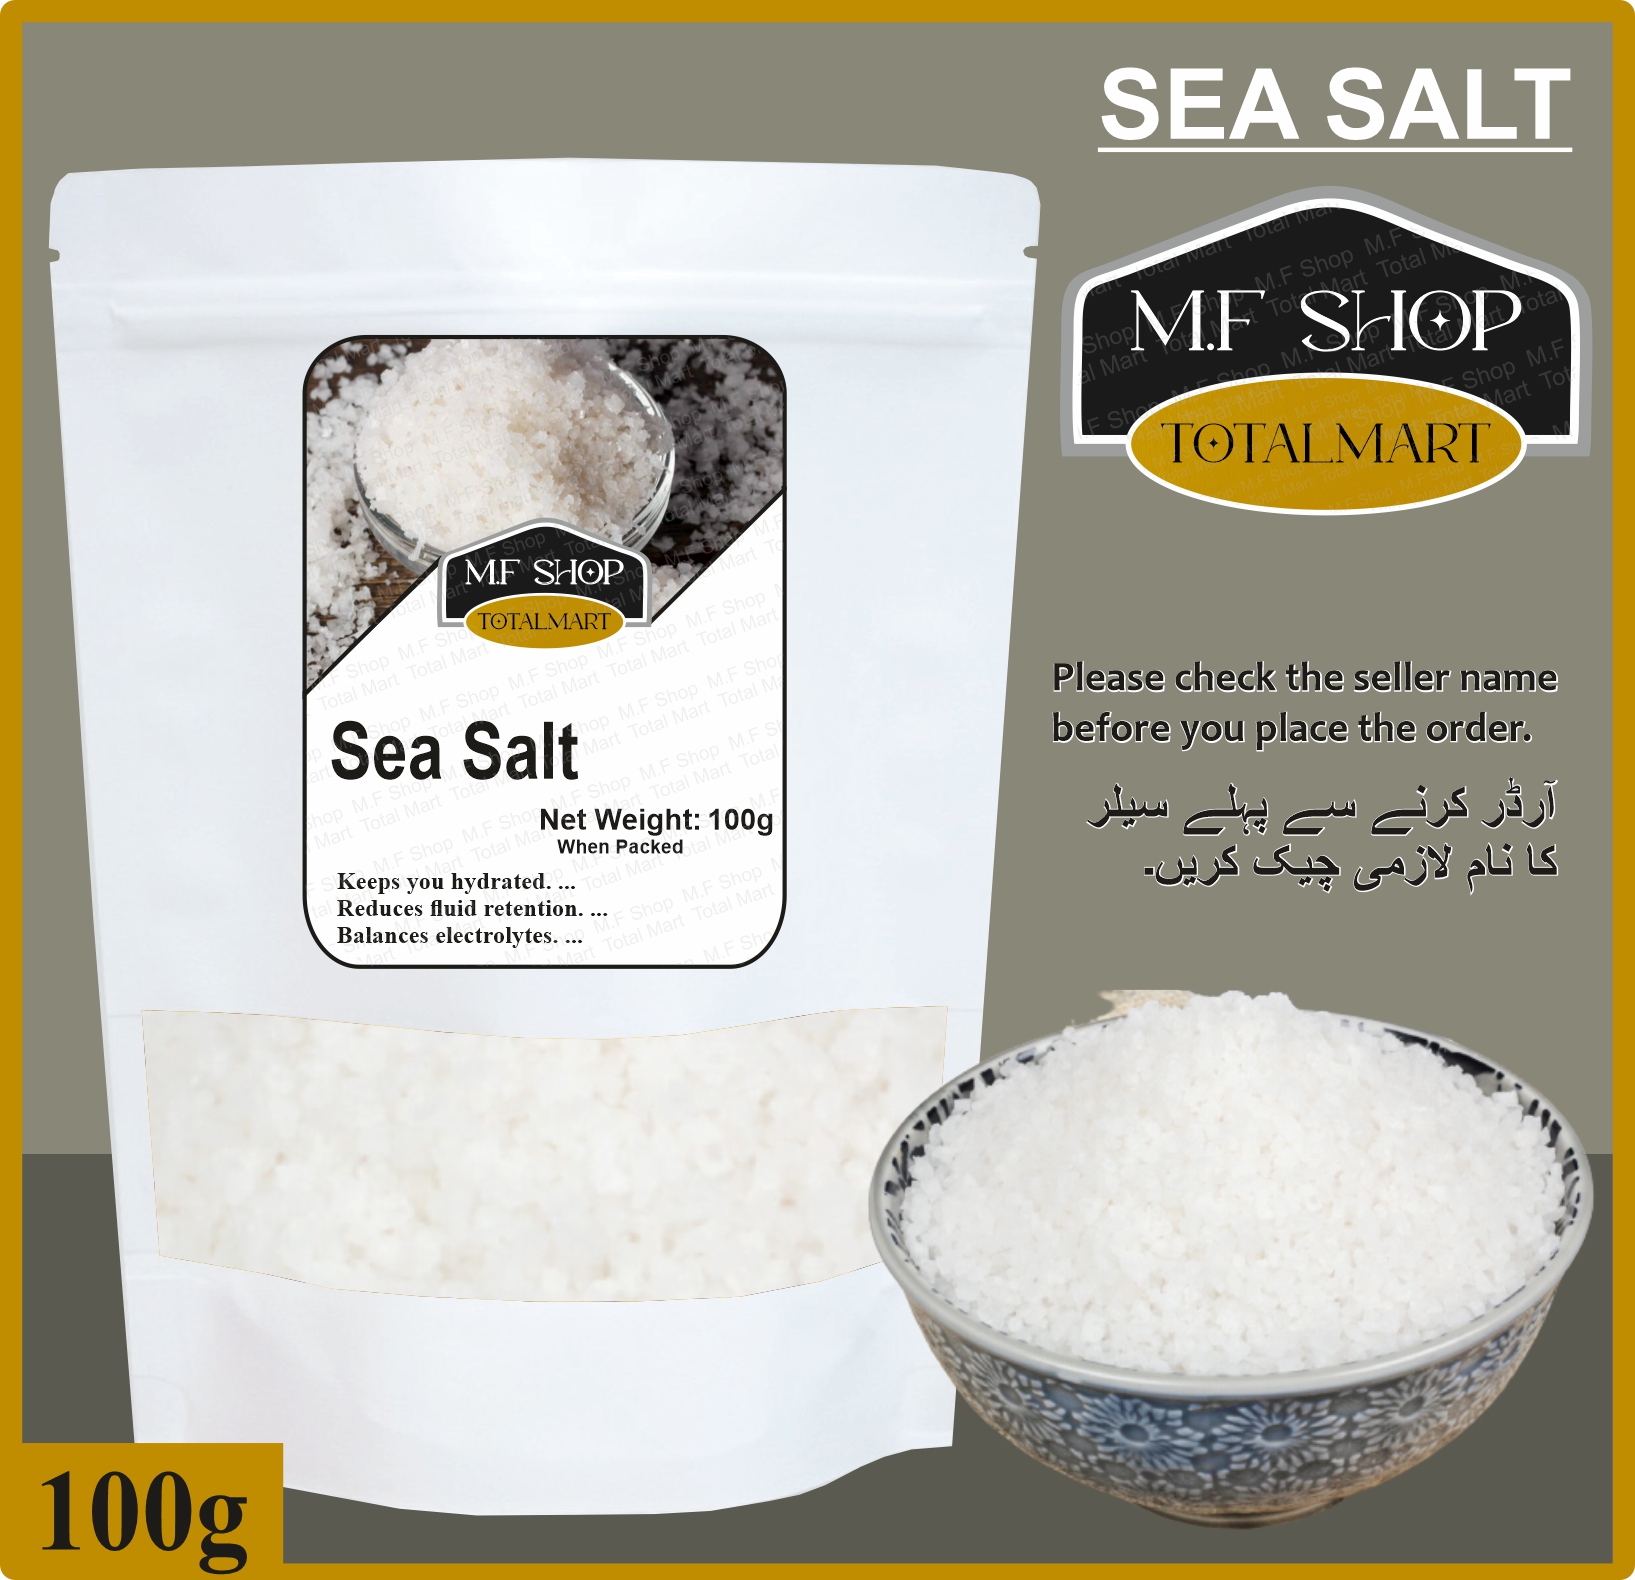 HubSalt  Buy Celtic Sea Salt in Pakistan - Order Online Celtic